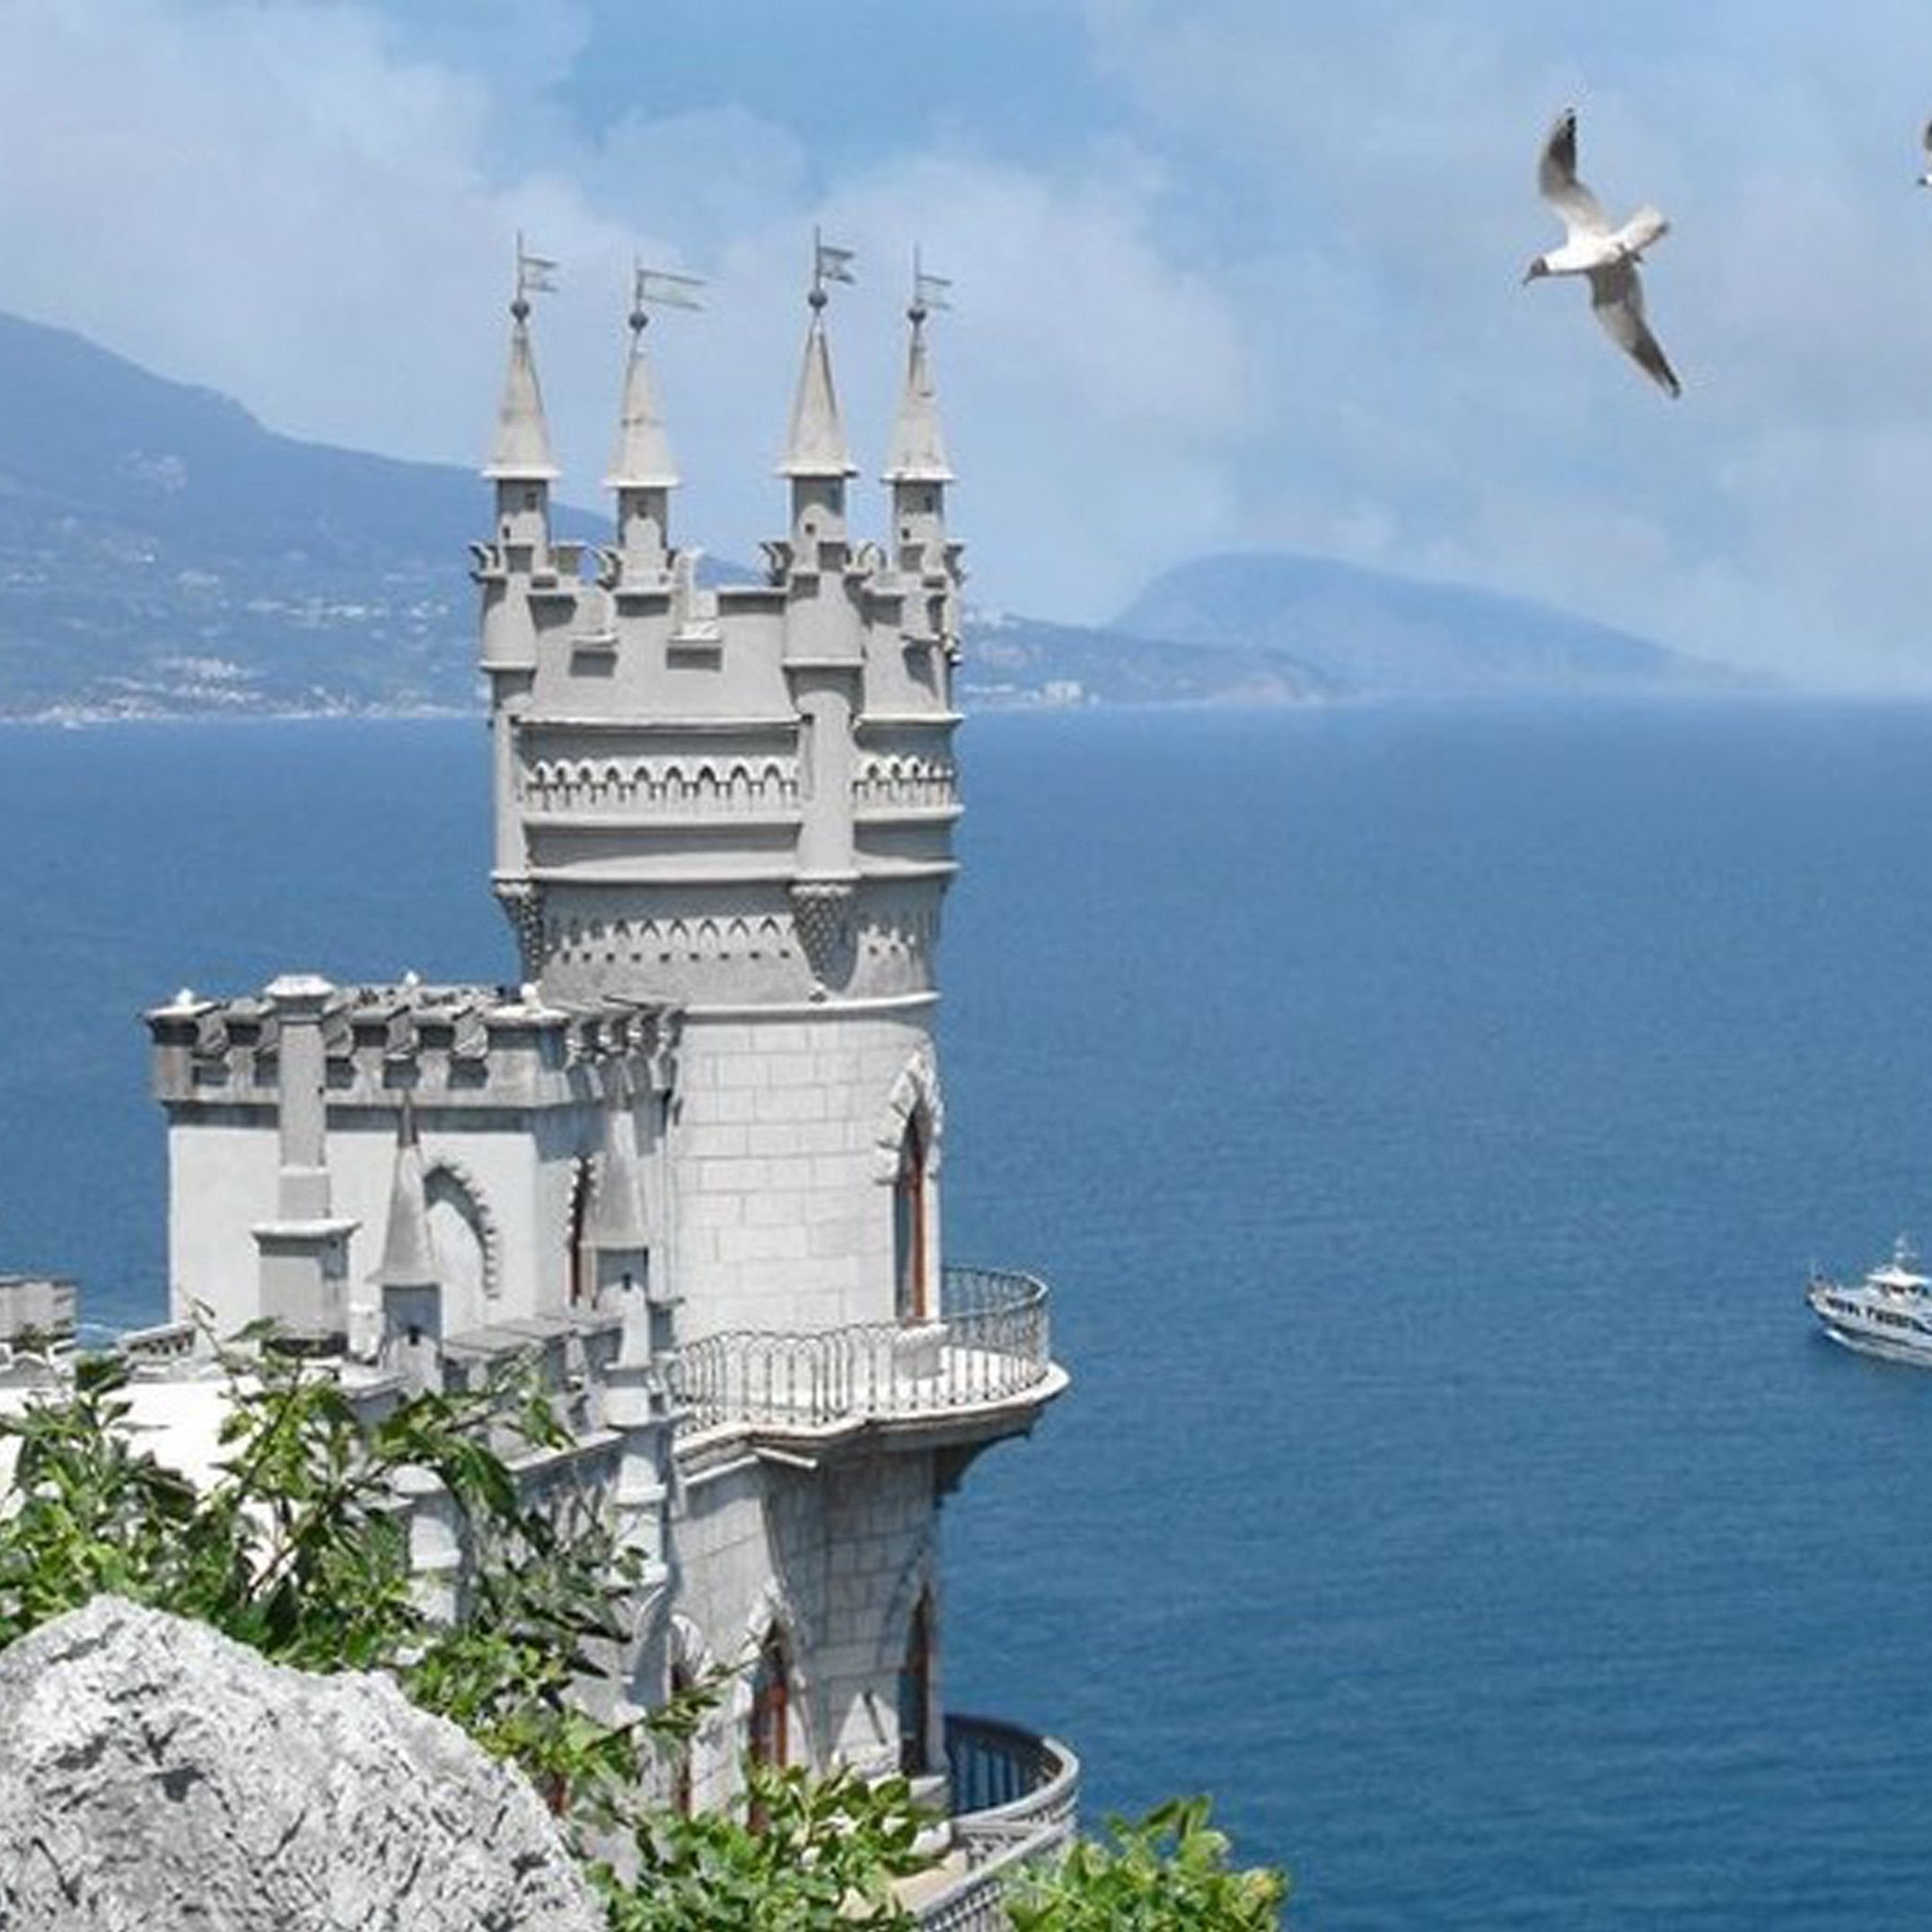 Какая природная достопримечательность является визитной карточкой крыма. Крым Ялта Ласточкино гнездо. Замок Ласточкино гнездо в Крыму. Ялта достопримечательности Ласточкино гнездо. Ласточкино гнездо в Крыму с моря.